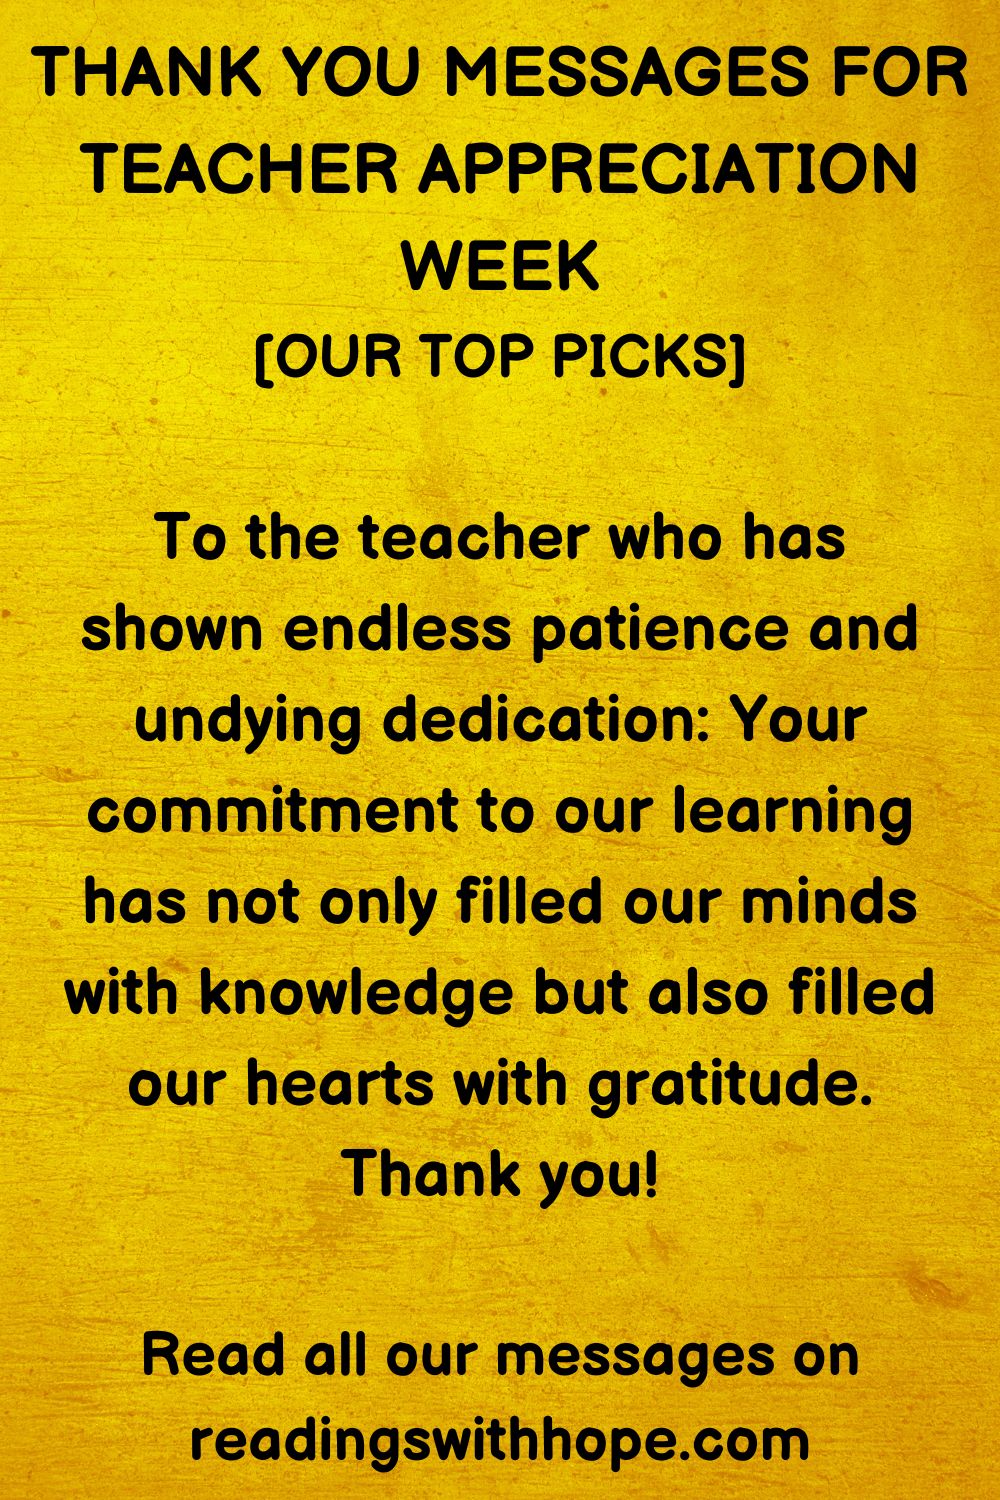 Thank You Message For Teacher Appreciation Week
